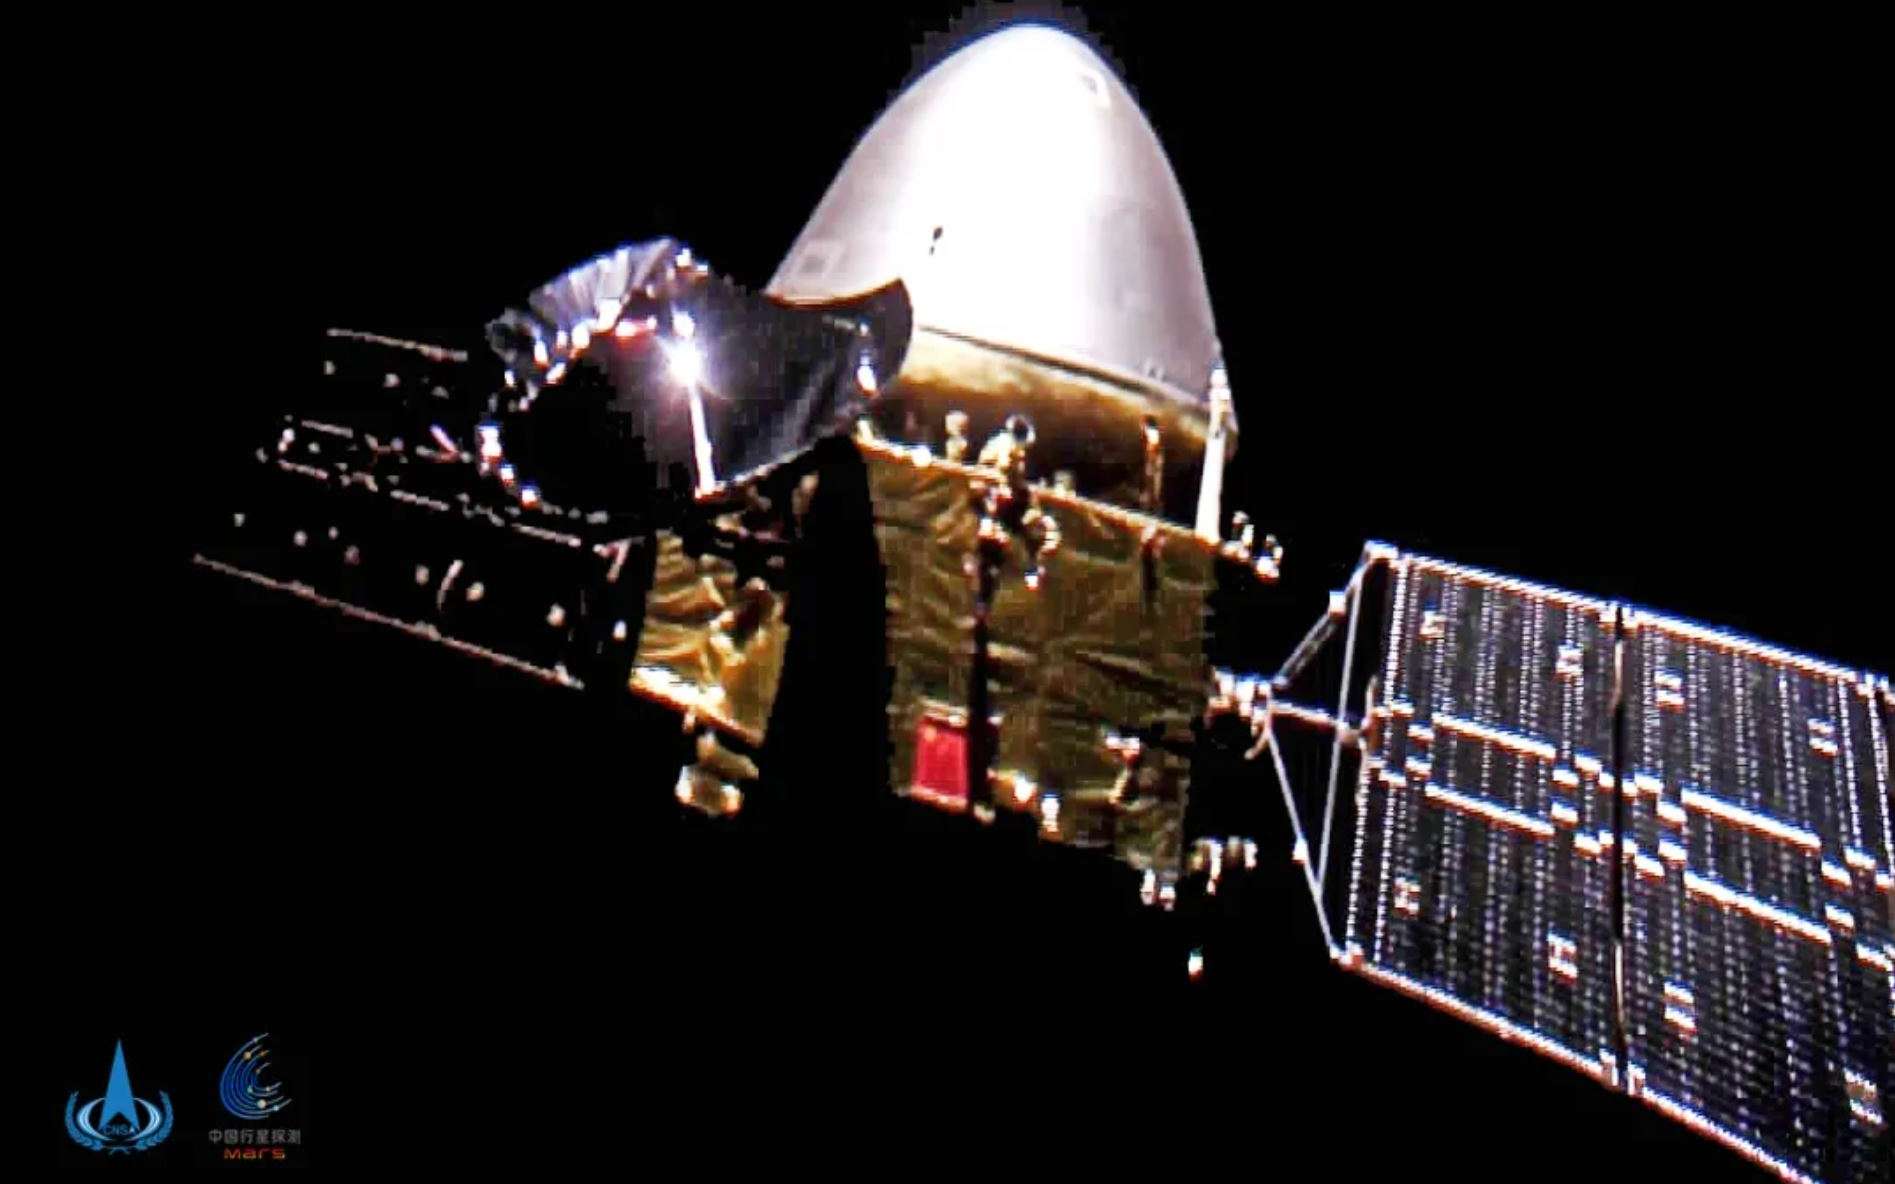 Le vaisseau Tianwen-1 s'est pris en photos sur son chemin vers Mars, du jamais vu !